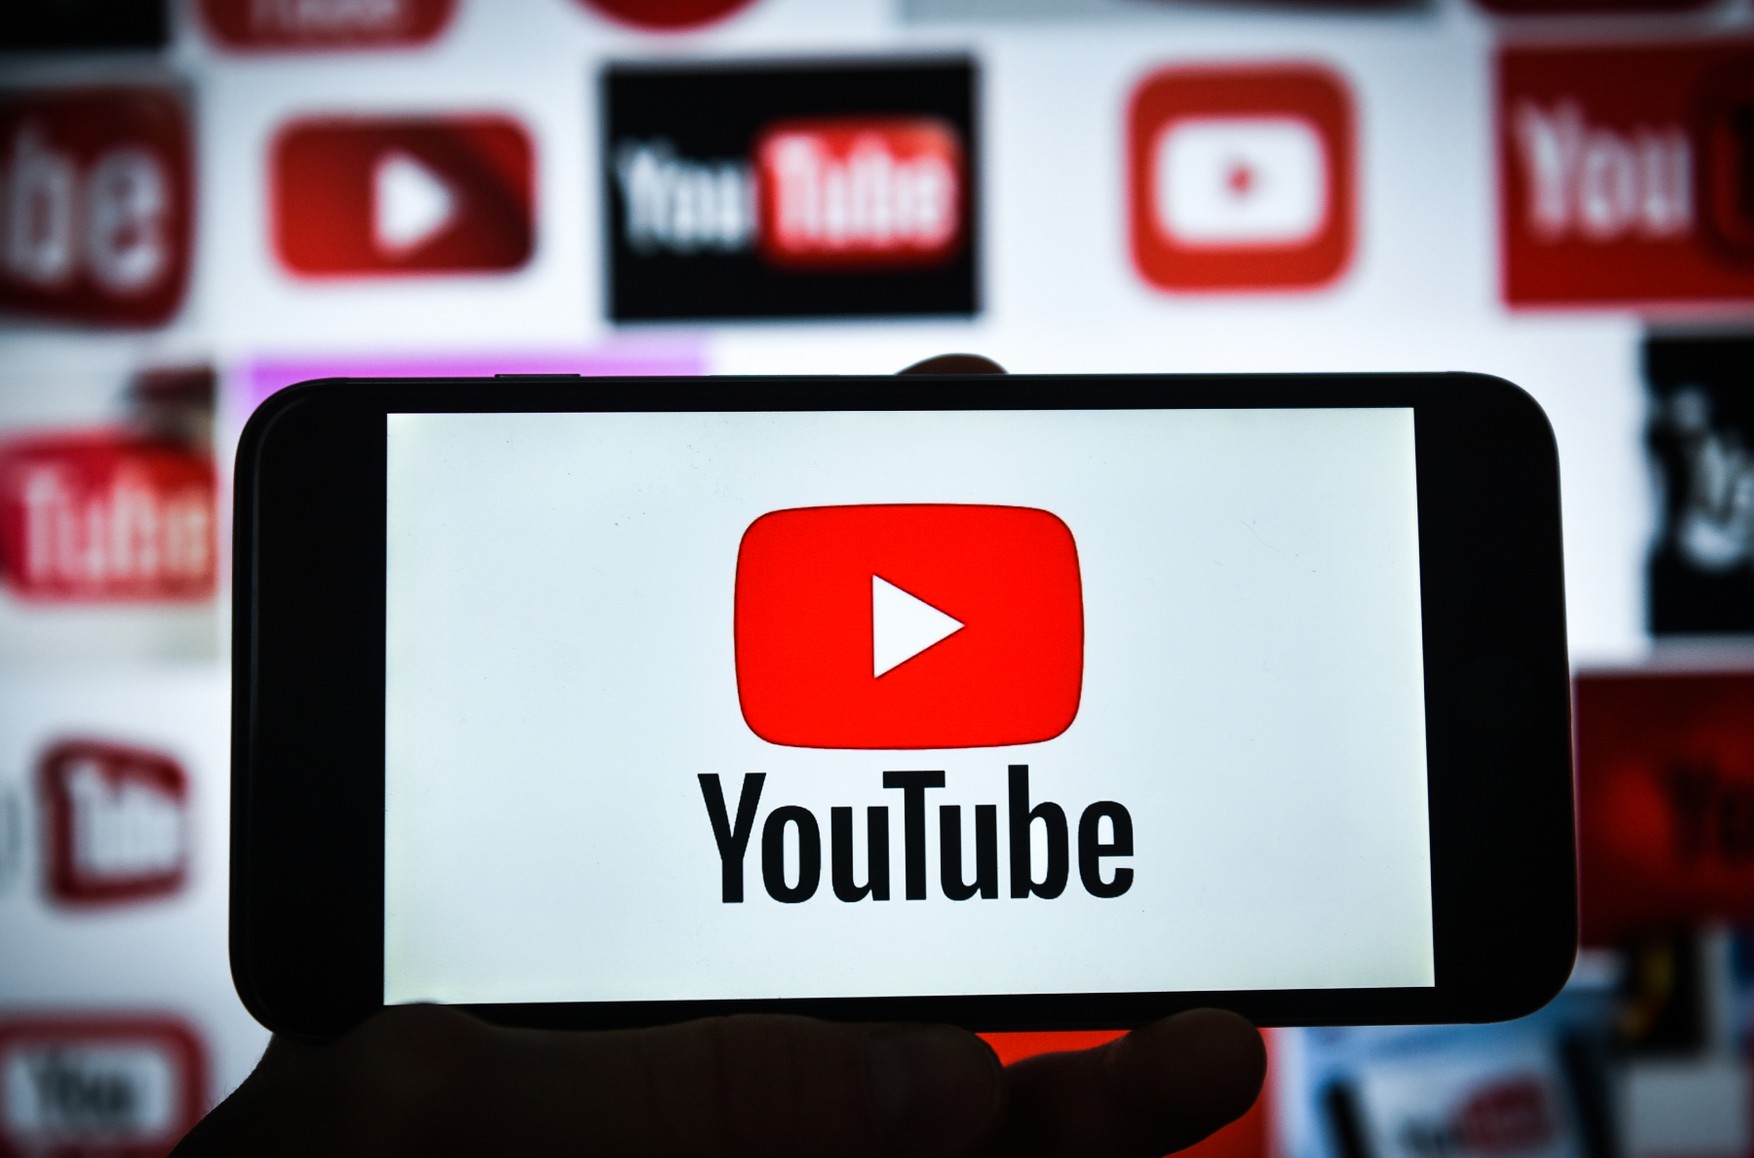 Блокировка YouTube в России может произойти в ближайшее время, если он не выполнит требования Роскомнадзора — замглавы комитета Госдумы